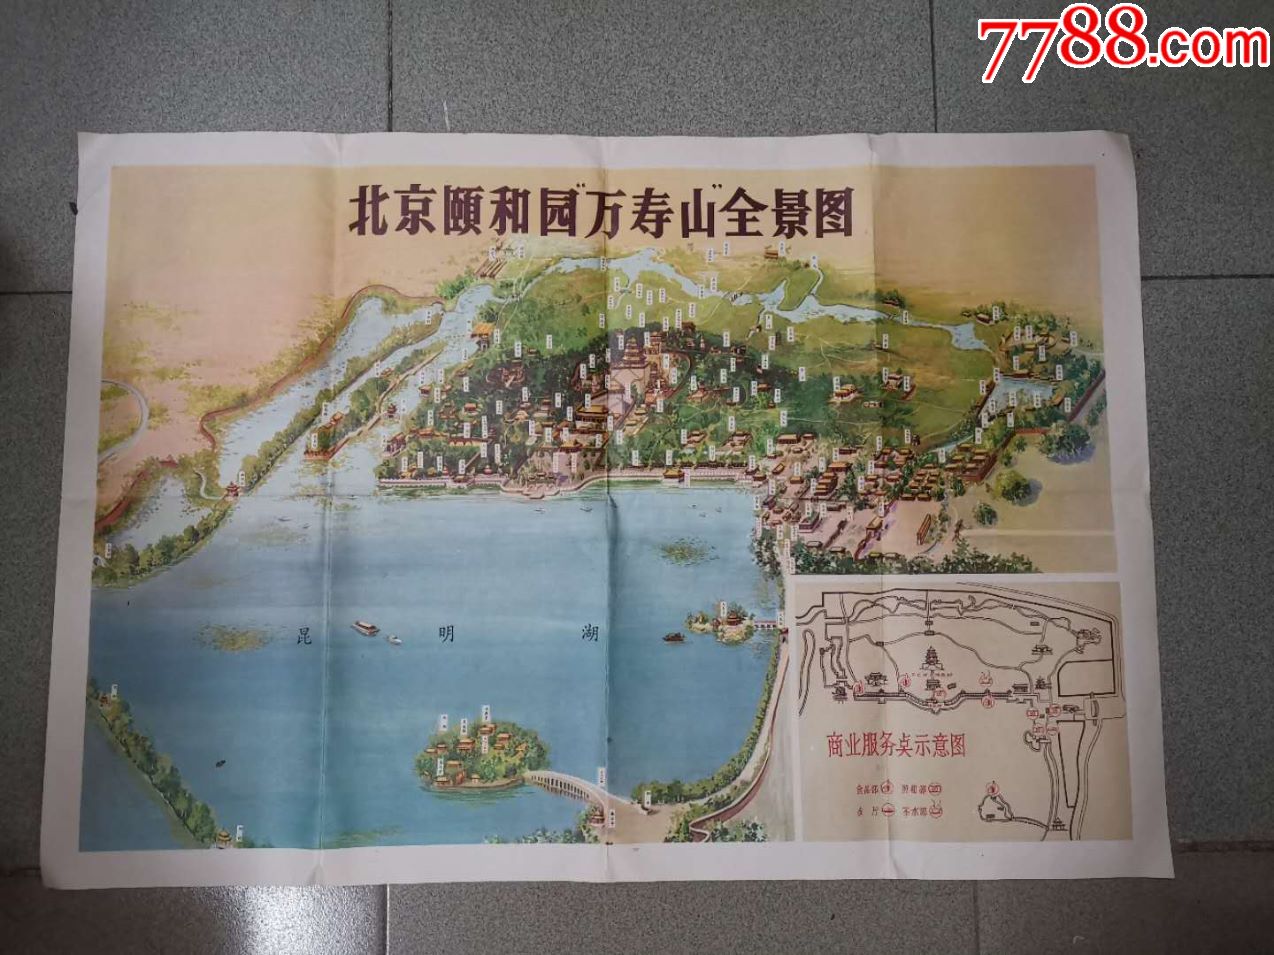 北京颐和园万寿山全景图,颐和园照相部制,厚实好纸印制(77*53cm)